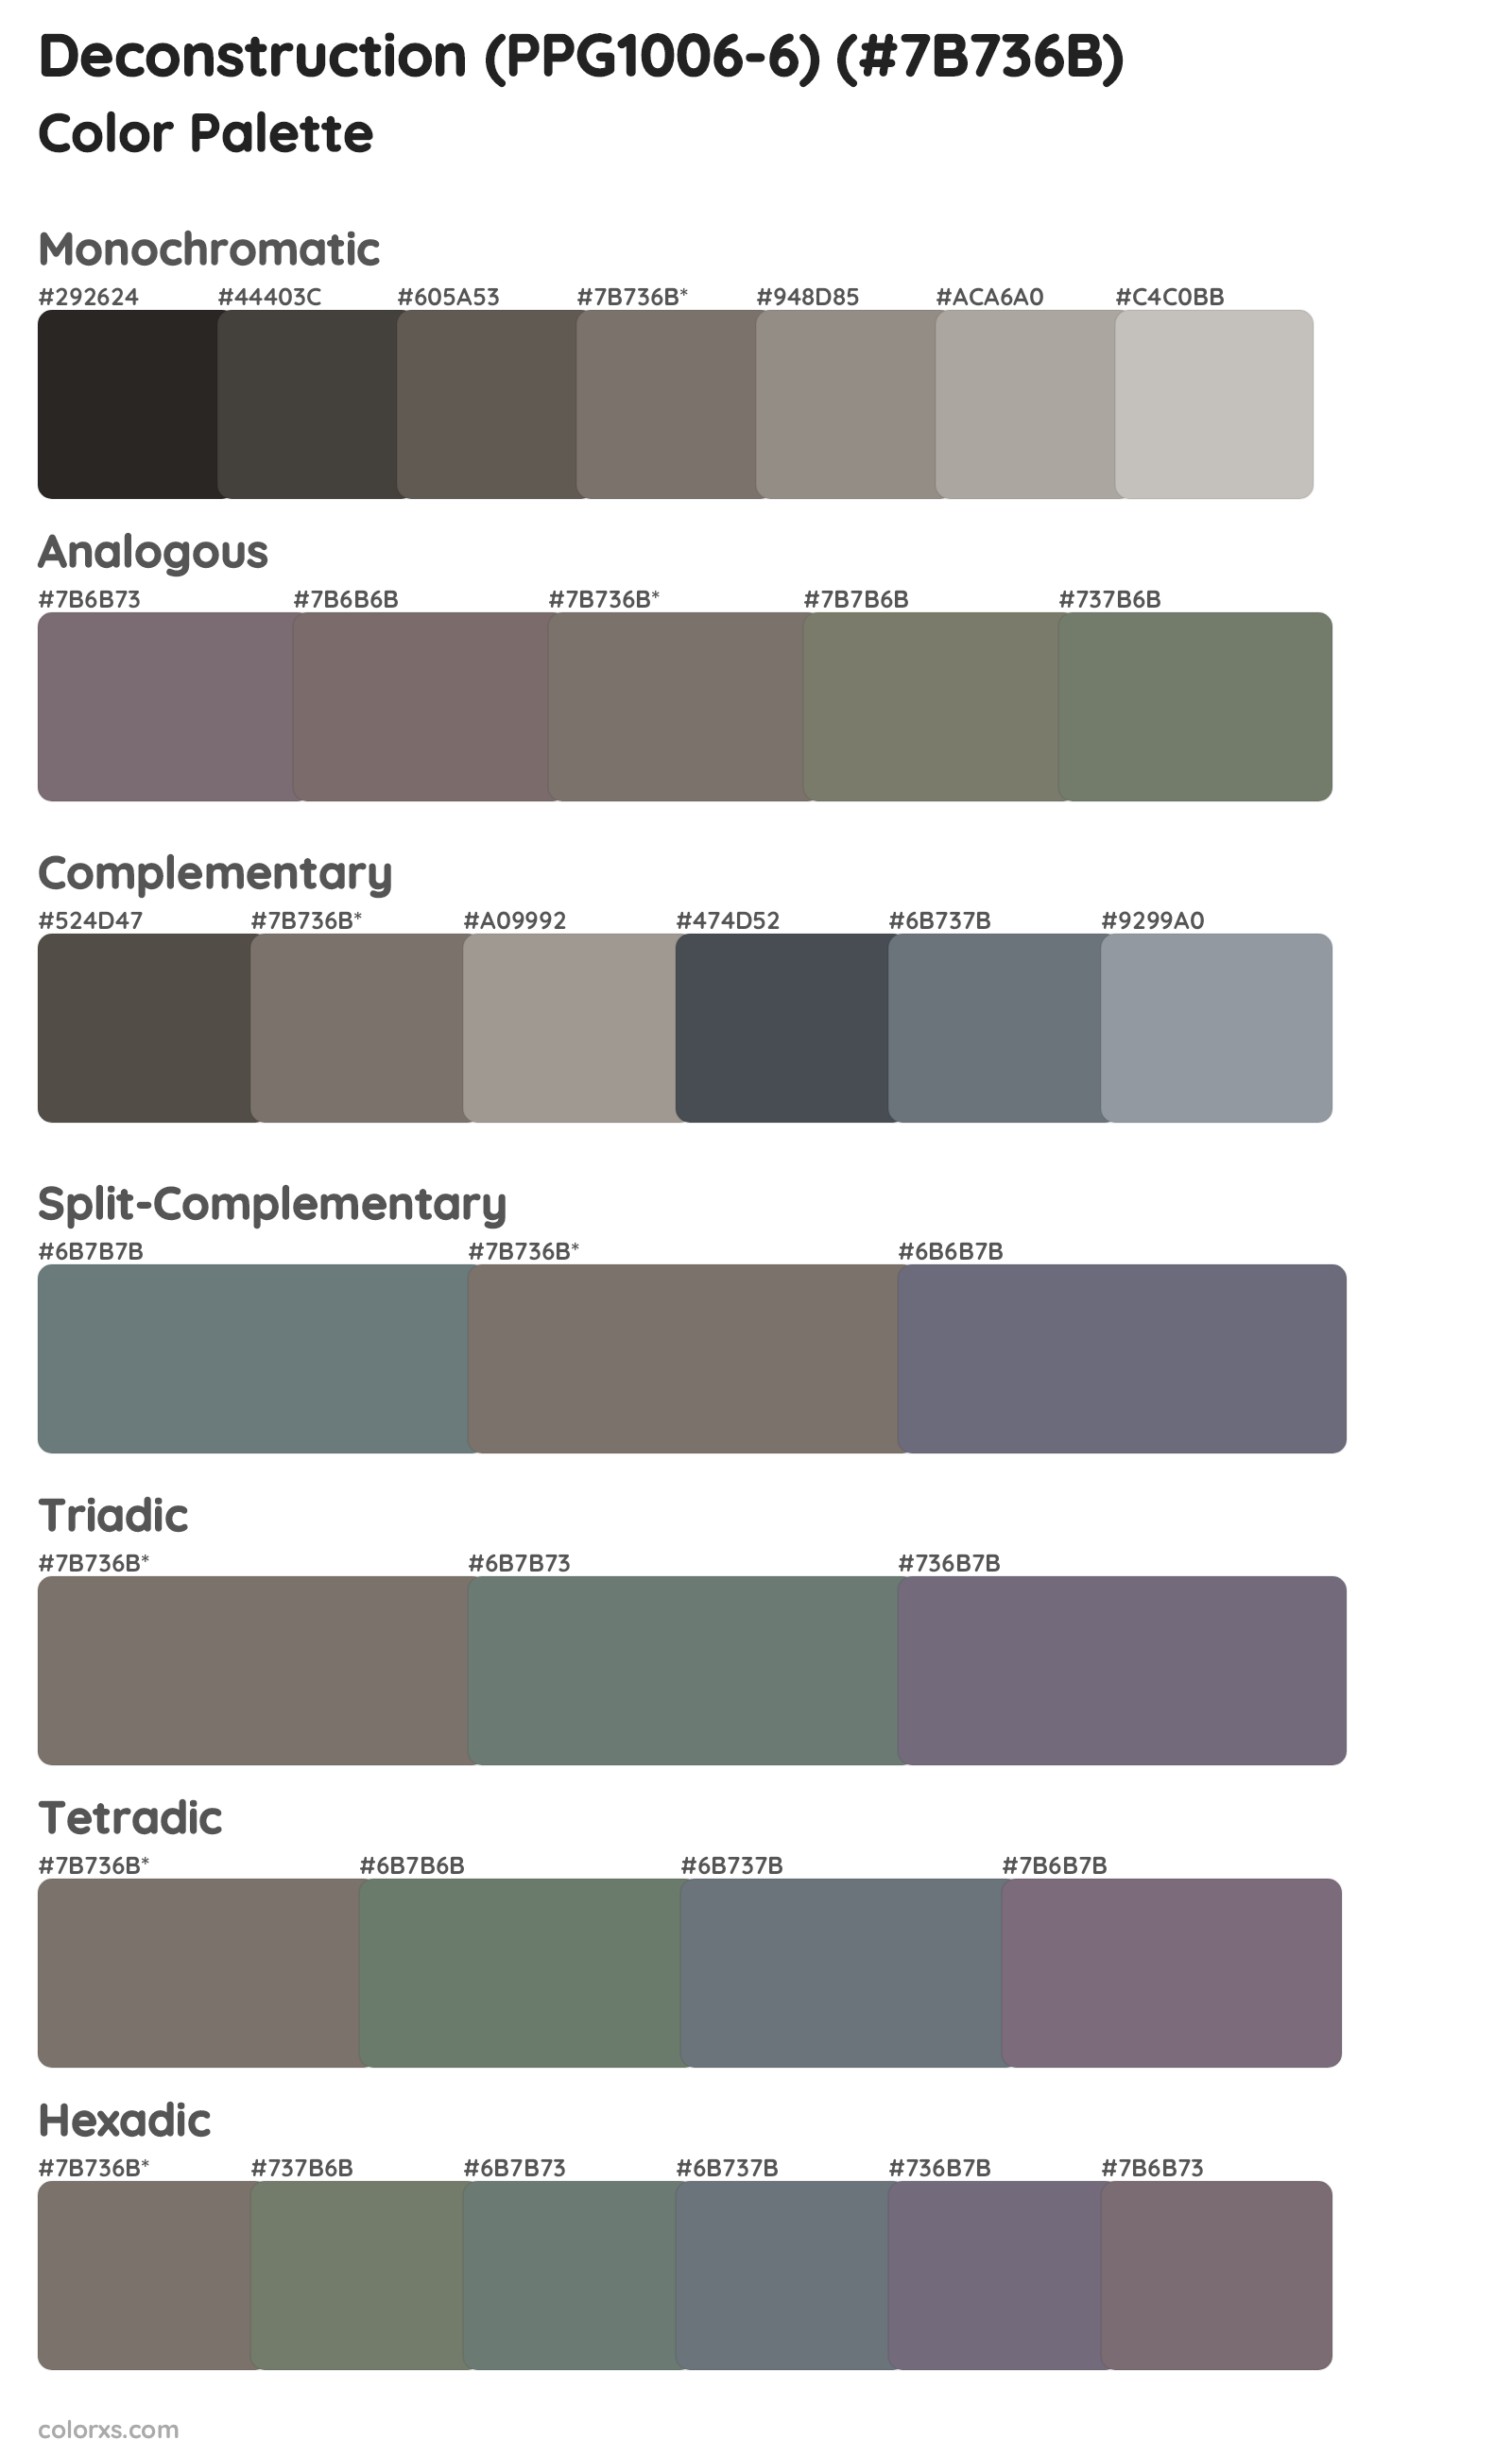 Deconstruction (PPG1006-6) Color Scheme Palettes